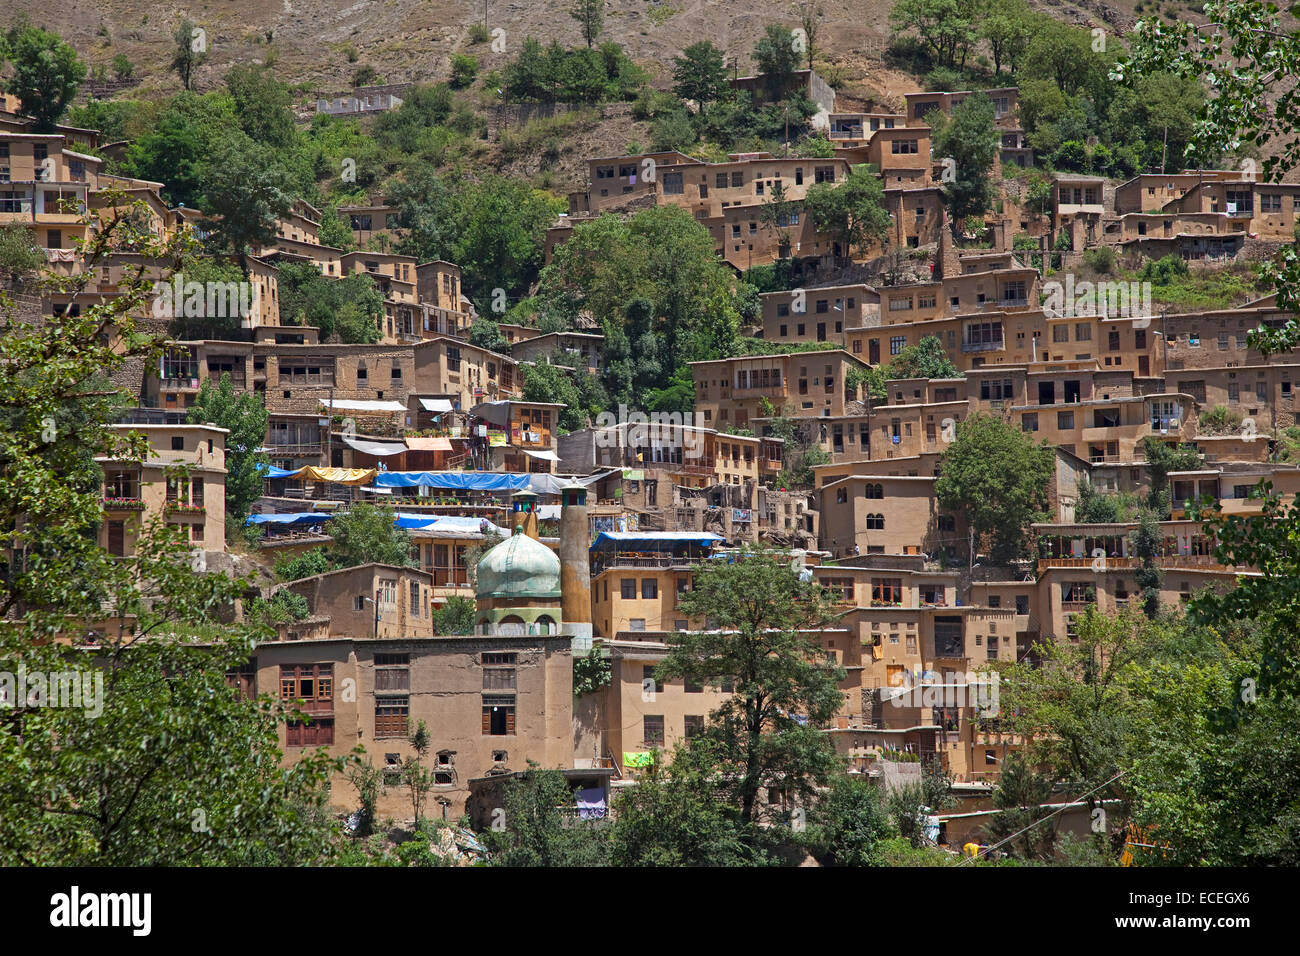 Des maisons en adobe interconnectés, des tiges et des troncs en terrasse dans le village de style Masuleh / Massulya, province de Gilan, Iran Banque D'Images